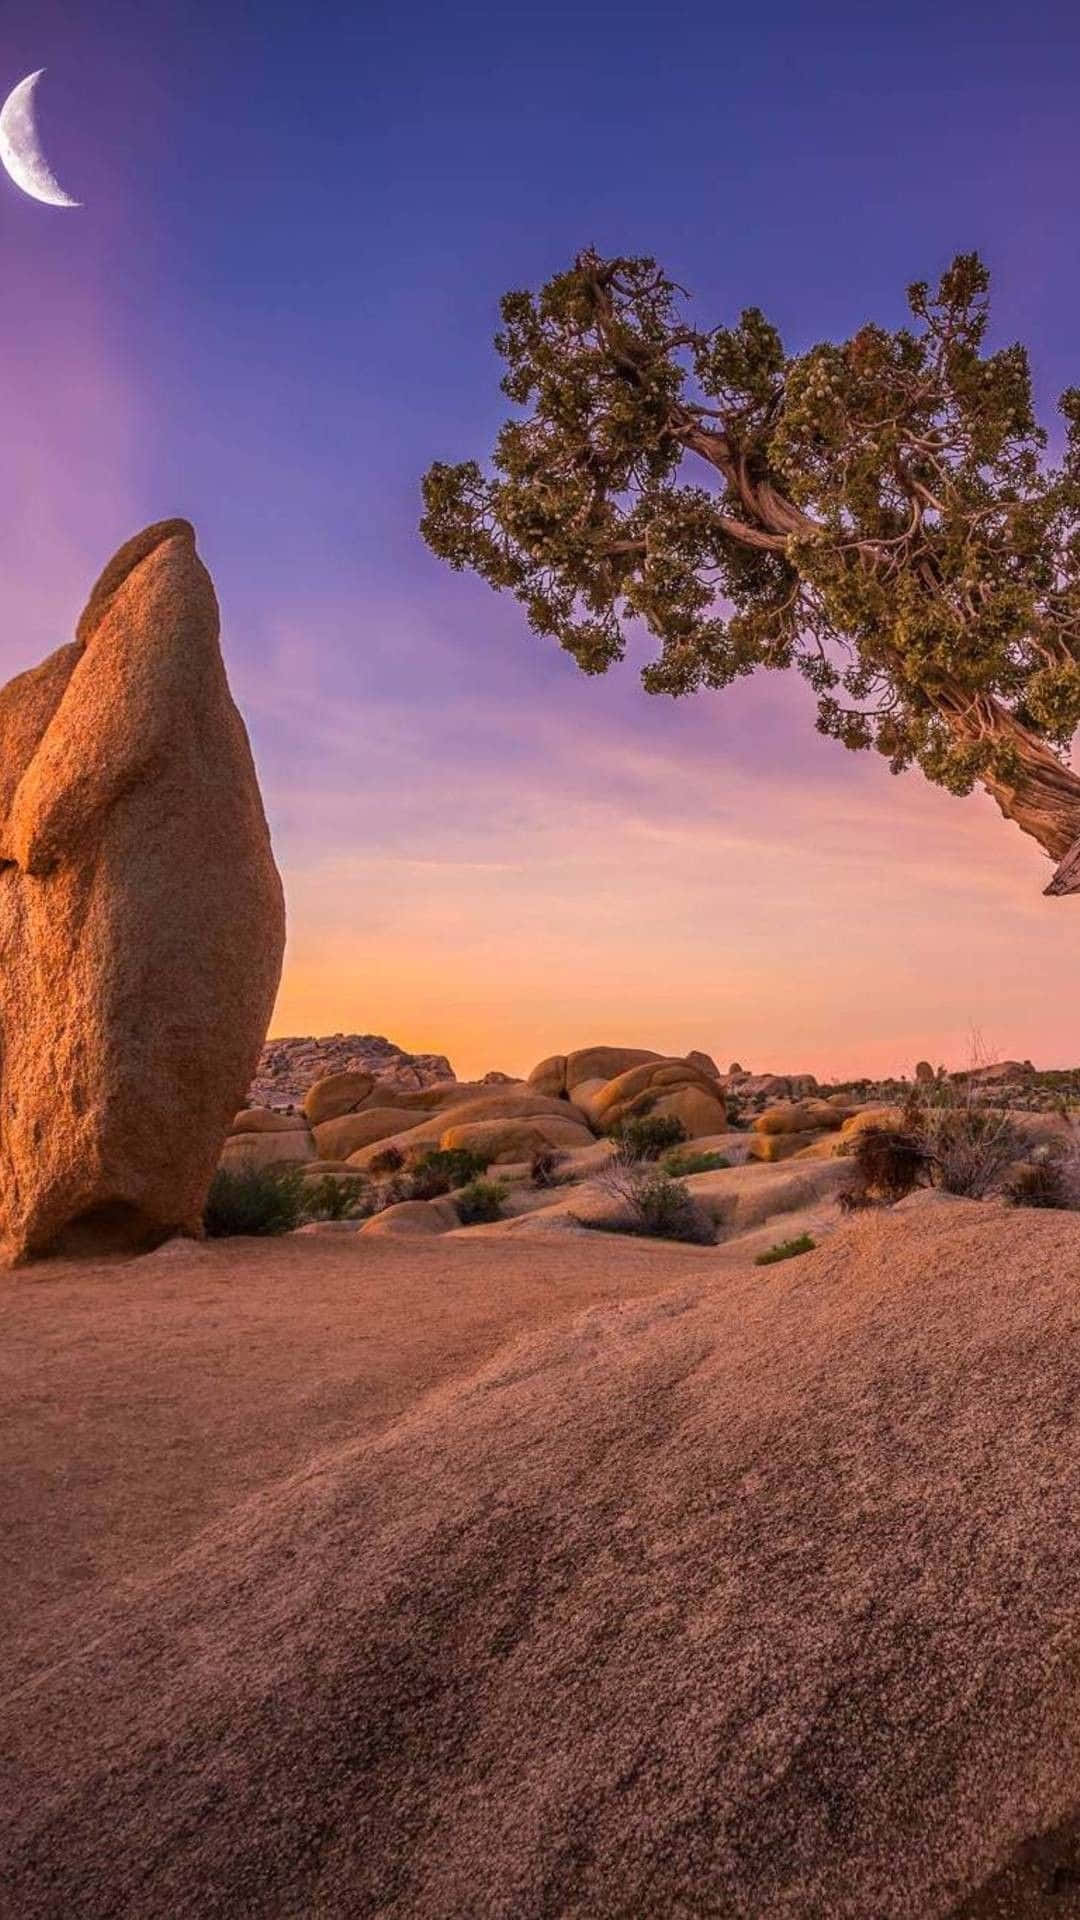 Billeder af Joshua Tree og stor sten, slår på skærmen.